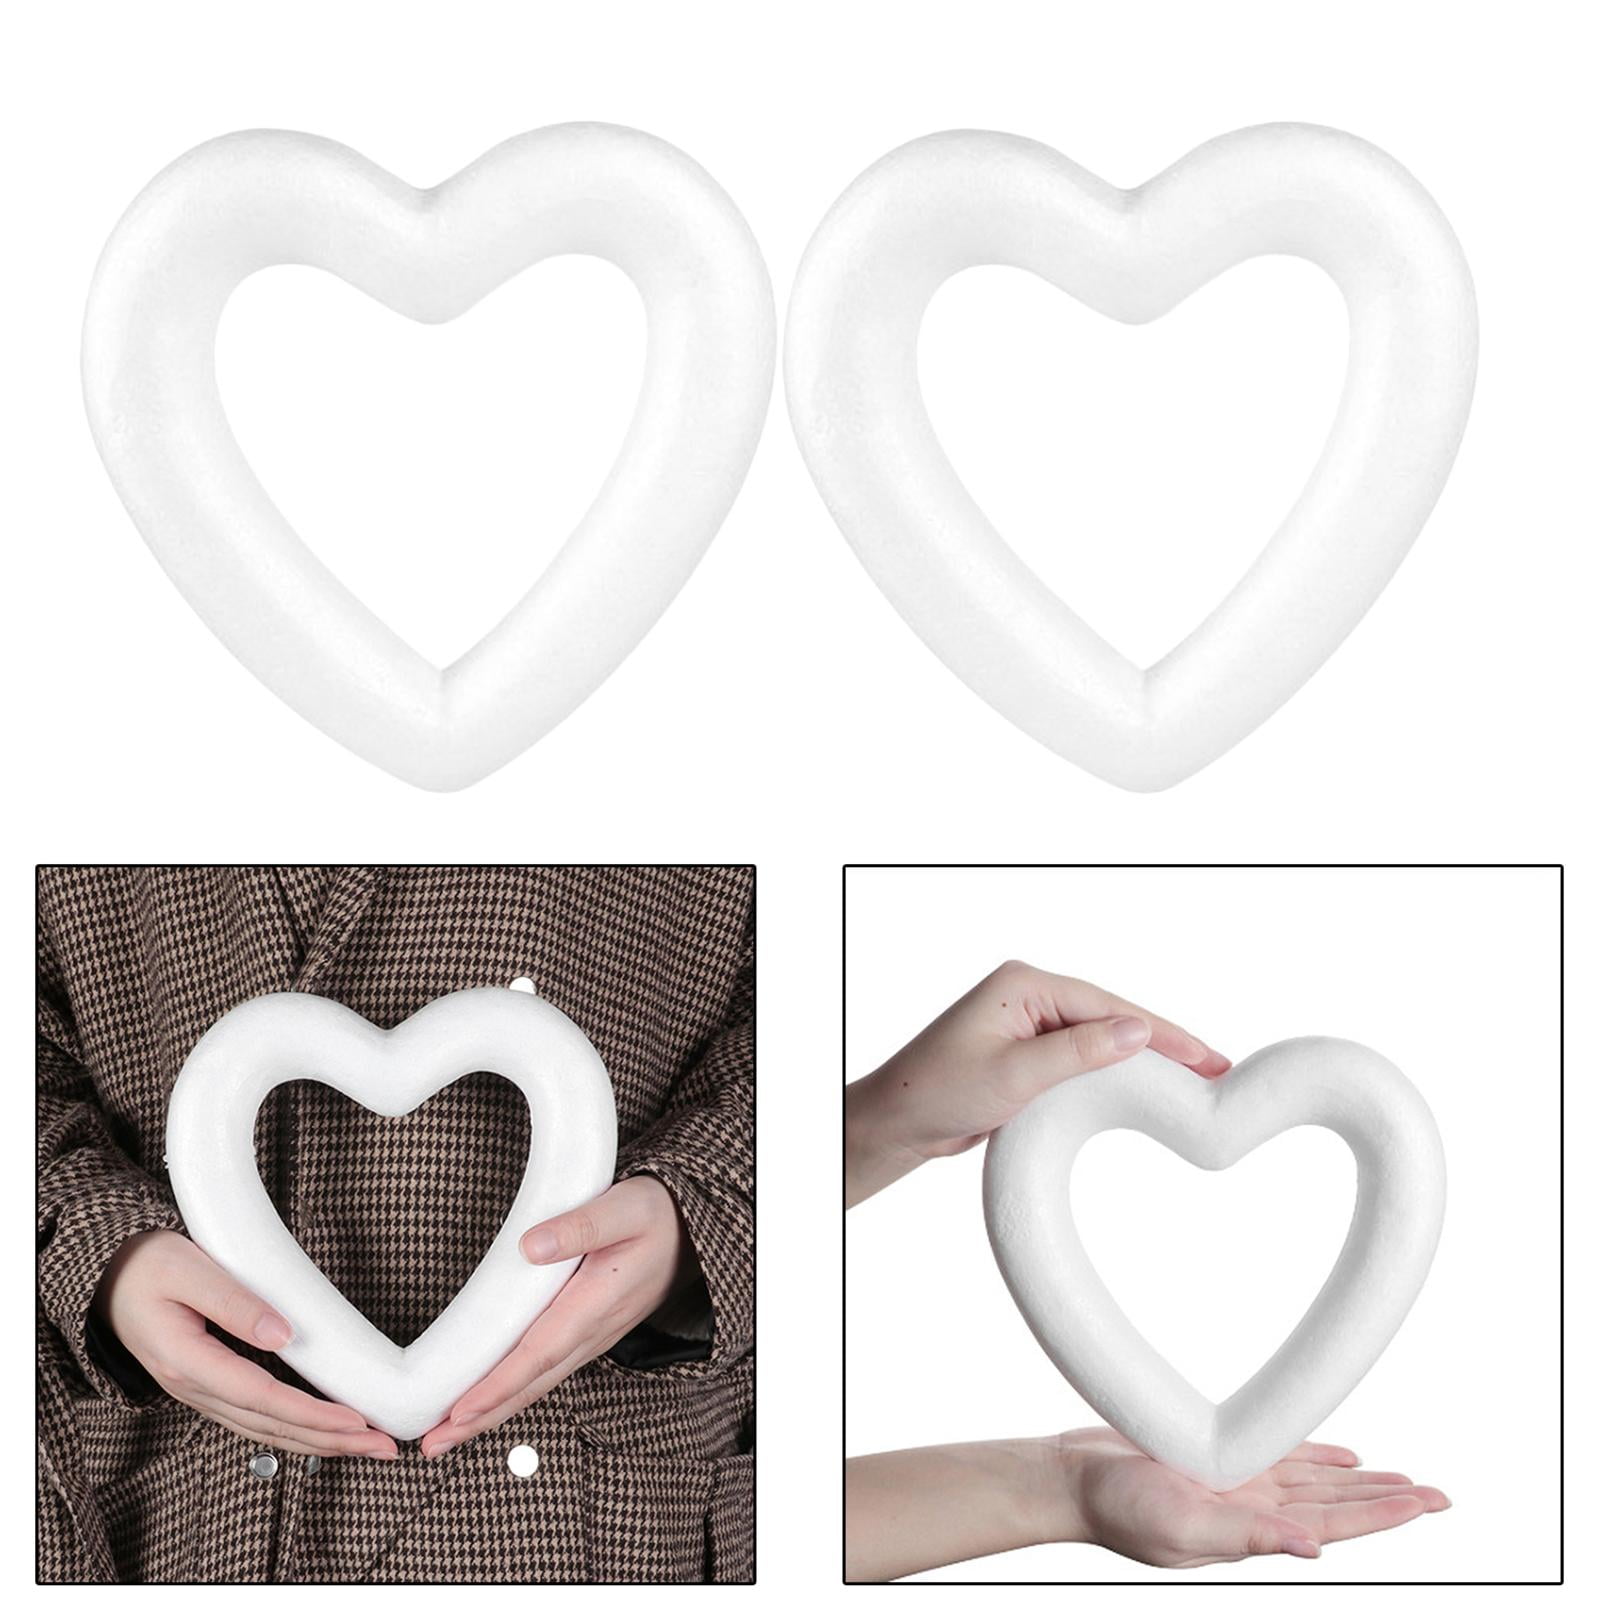  Didiseaon 40 Pcs Love Bubble Heart Craft Foam Craft Foam Heart  Wreath Valentine Wreath Form Heart Shape Foam for Crafts Wreath Making Form  Foam Hearts Foam Shapes Wedding Foam Block White